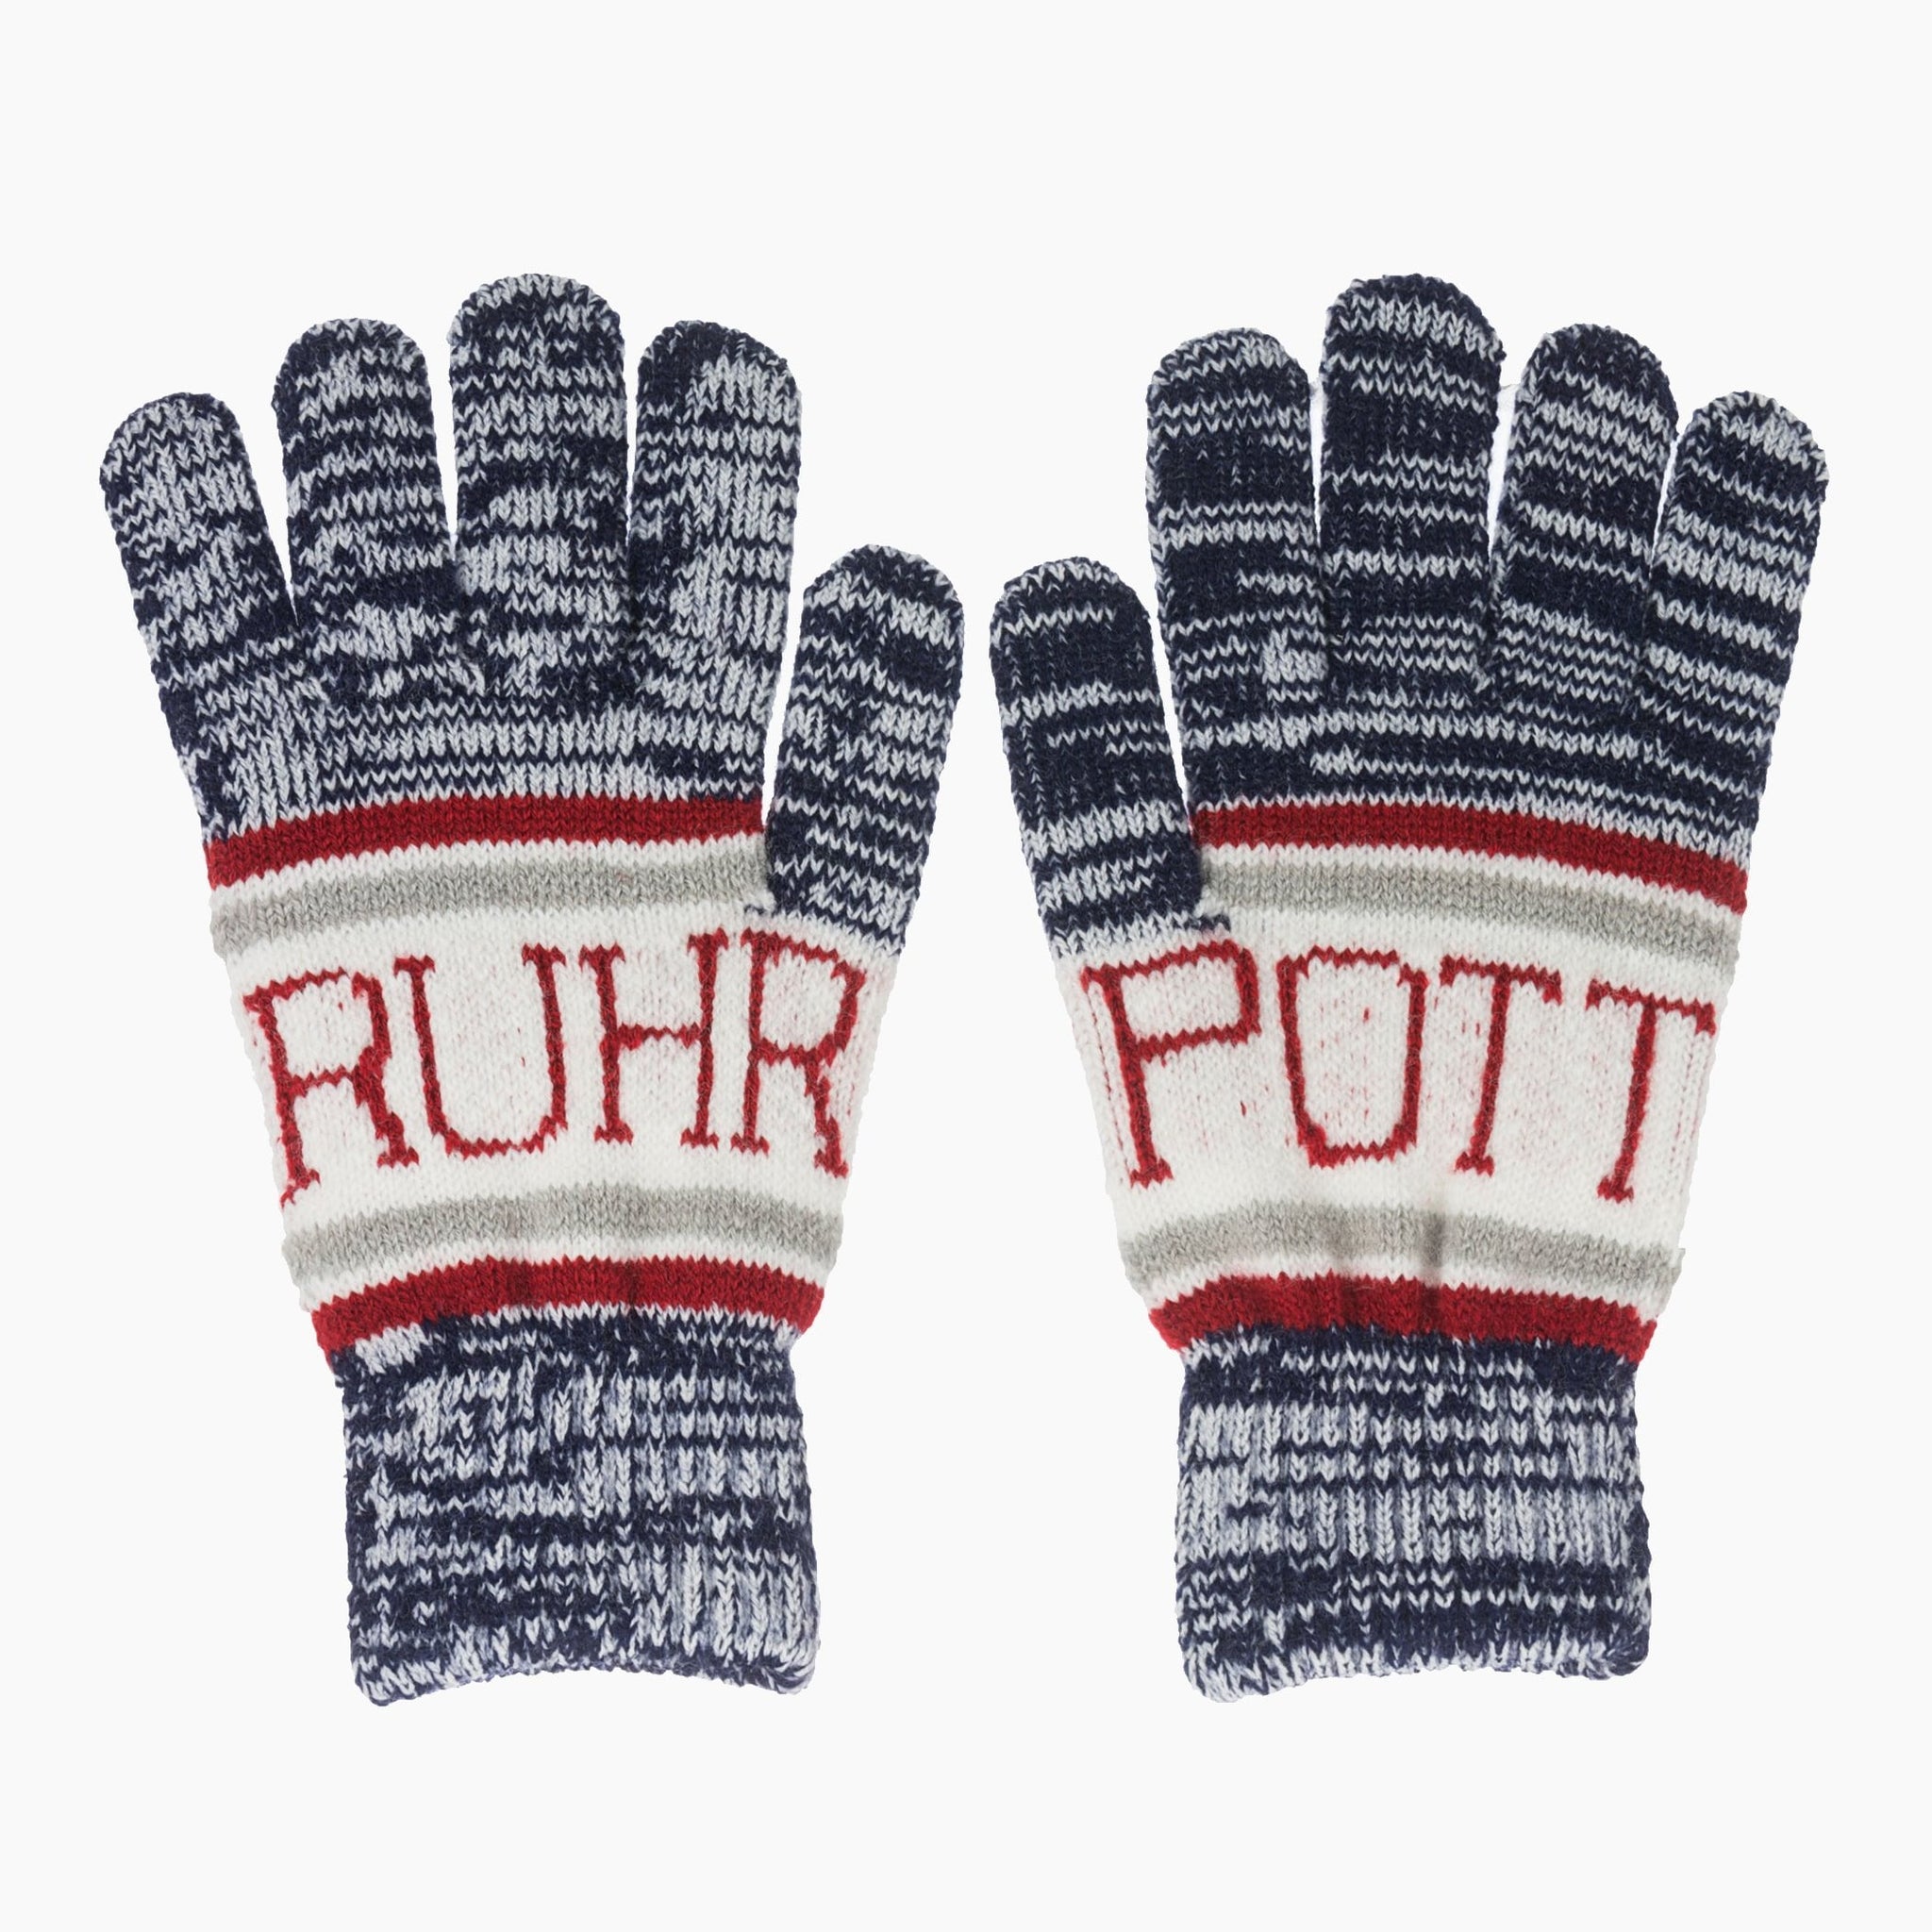 Ruhrpott Gloves - Robin Ruth